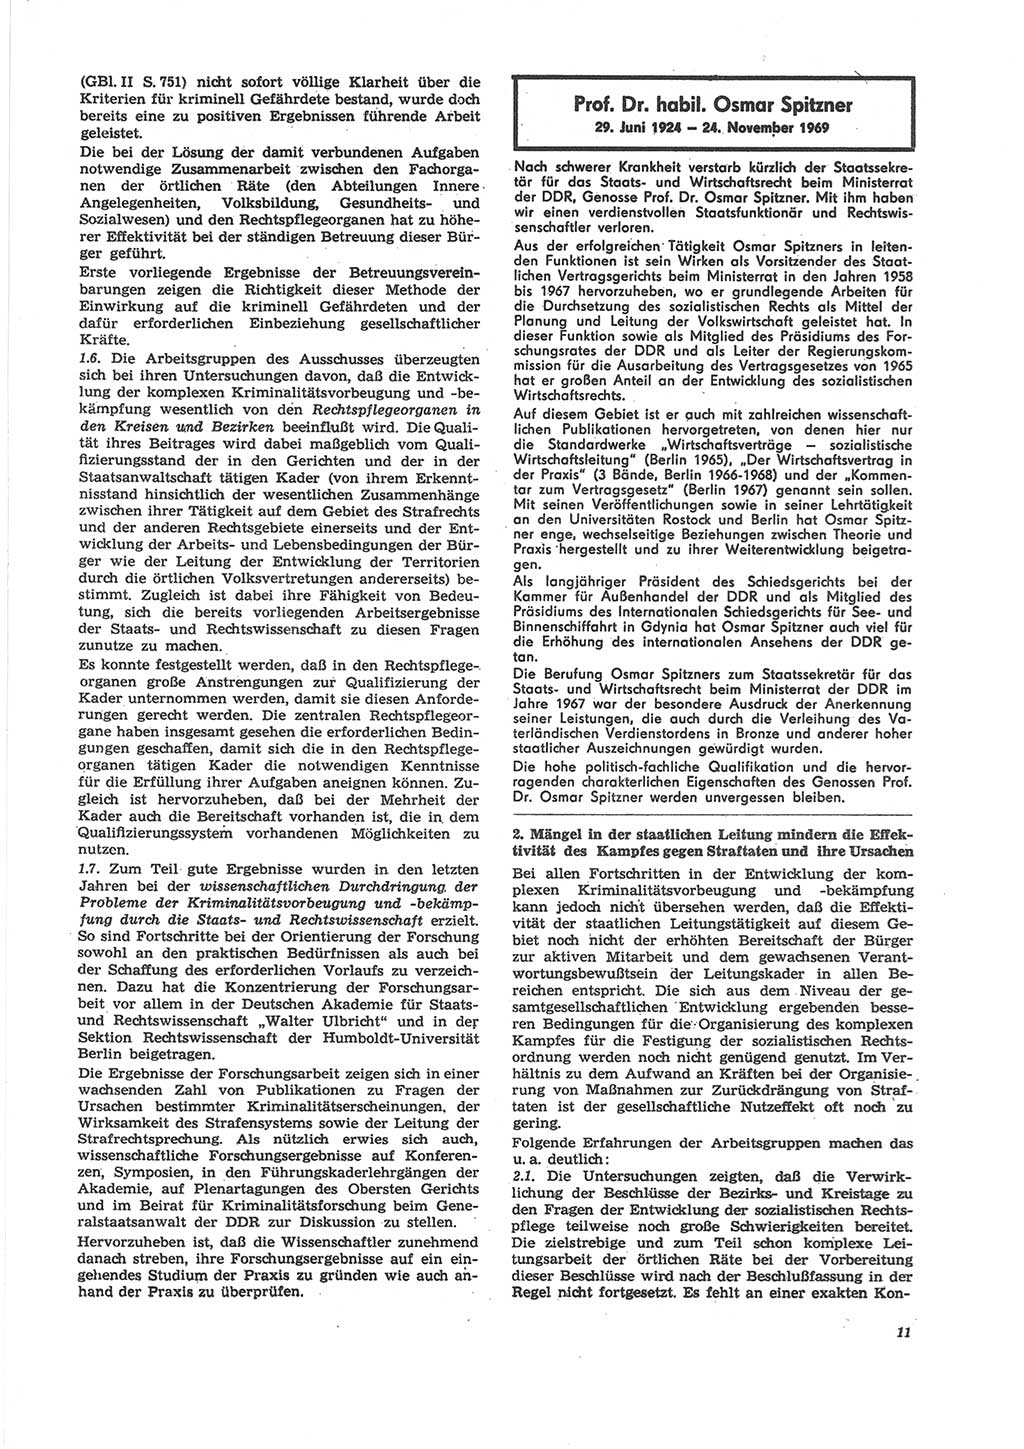 Neue Justiz (NJ), Zeitschrift für Recht und Rechtswissenschaft [Deutsche Demokratische Republik (DDR)], 24. Jahrgang 1970, Seite 11 (NJ DDR 1970, S. 11)